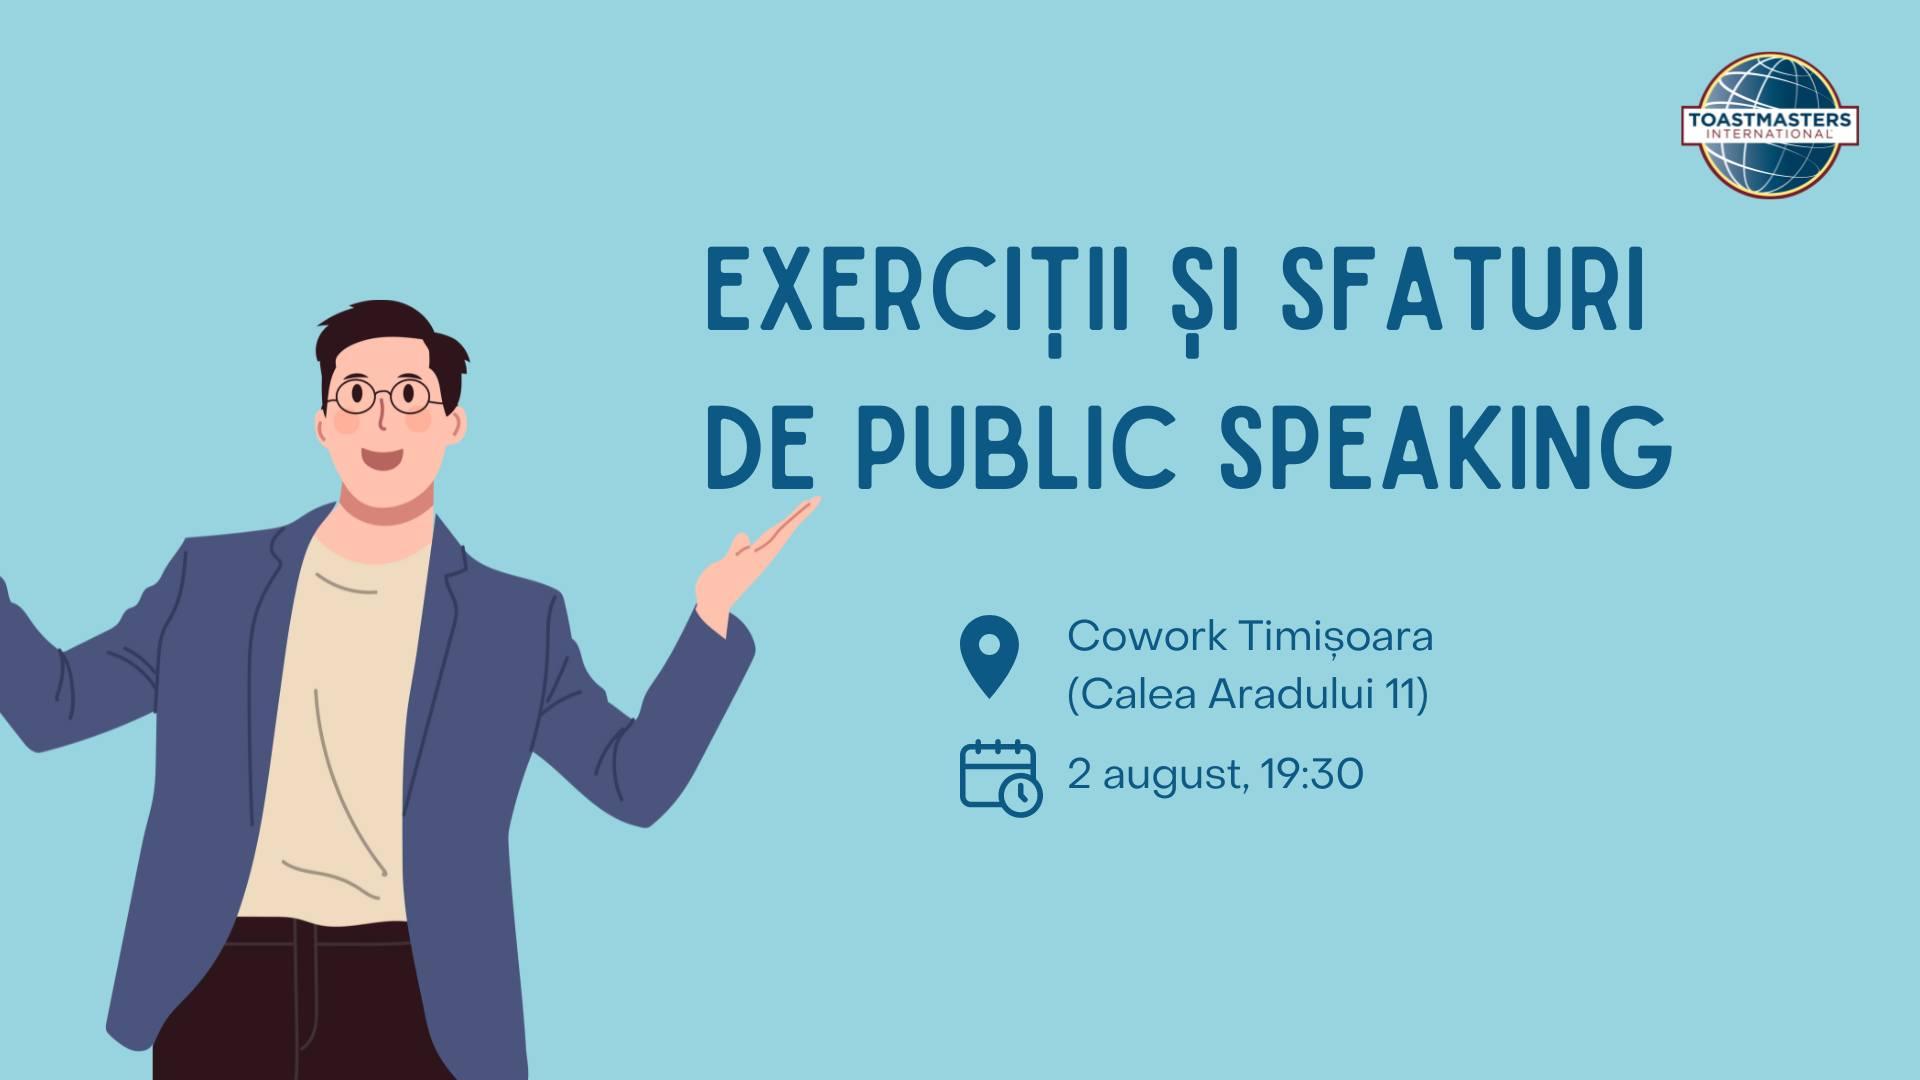 Întâlnire de vorbit în public - Timișoara Toastmasters